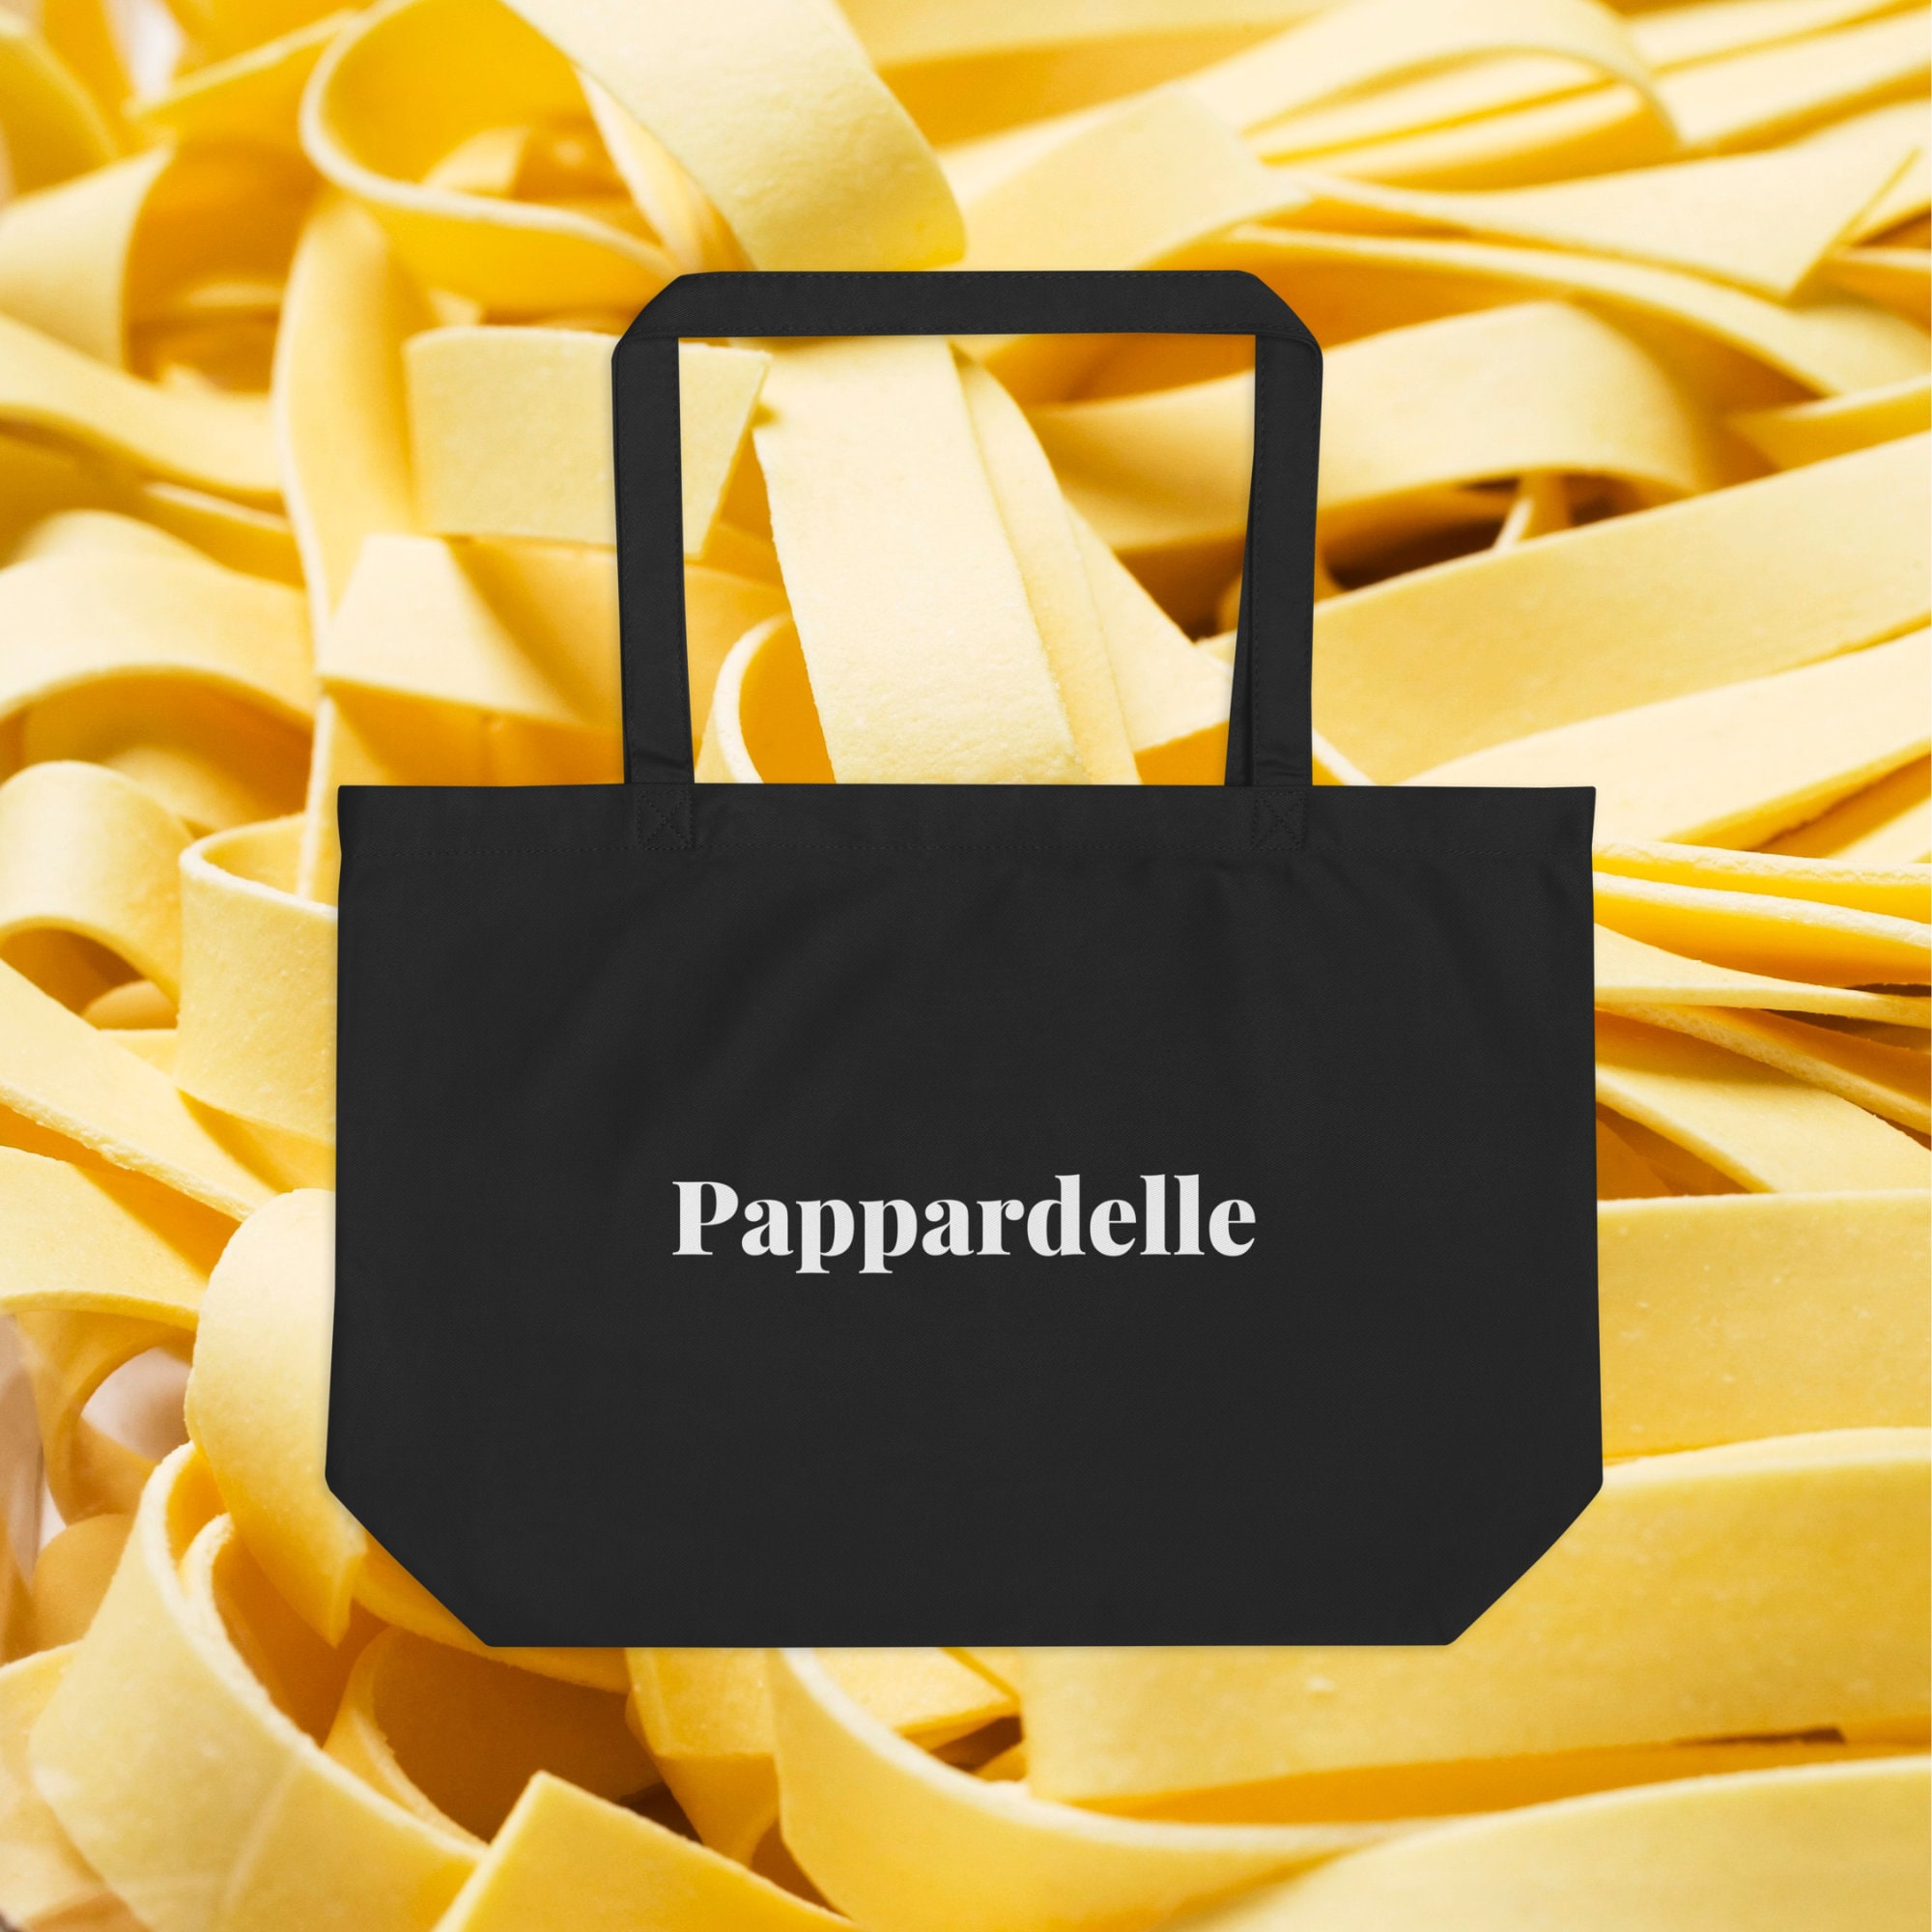 DOUGH PRESS-PASTA Extruder 10 Brass-dies Press Machine-pasta Maker  Tagliolini-passatelli, Pappardelle-spaghetti-tagliatelle-caserecce Etc. 